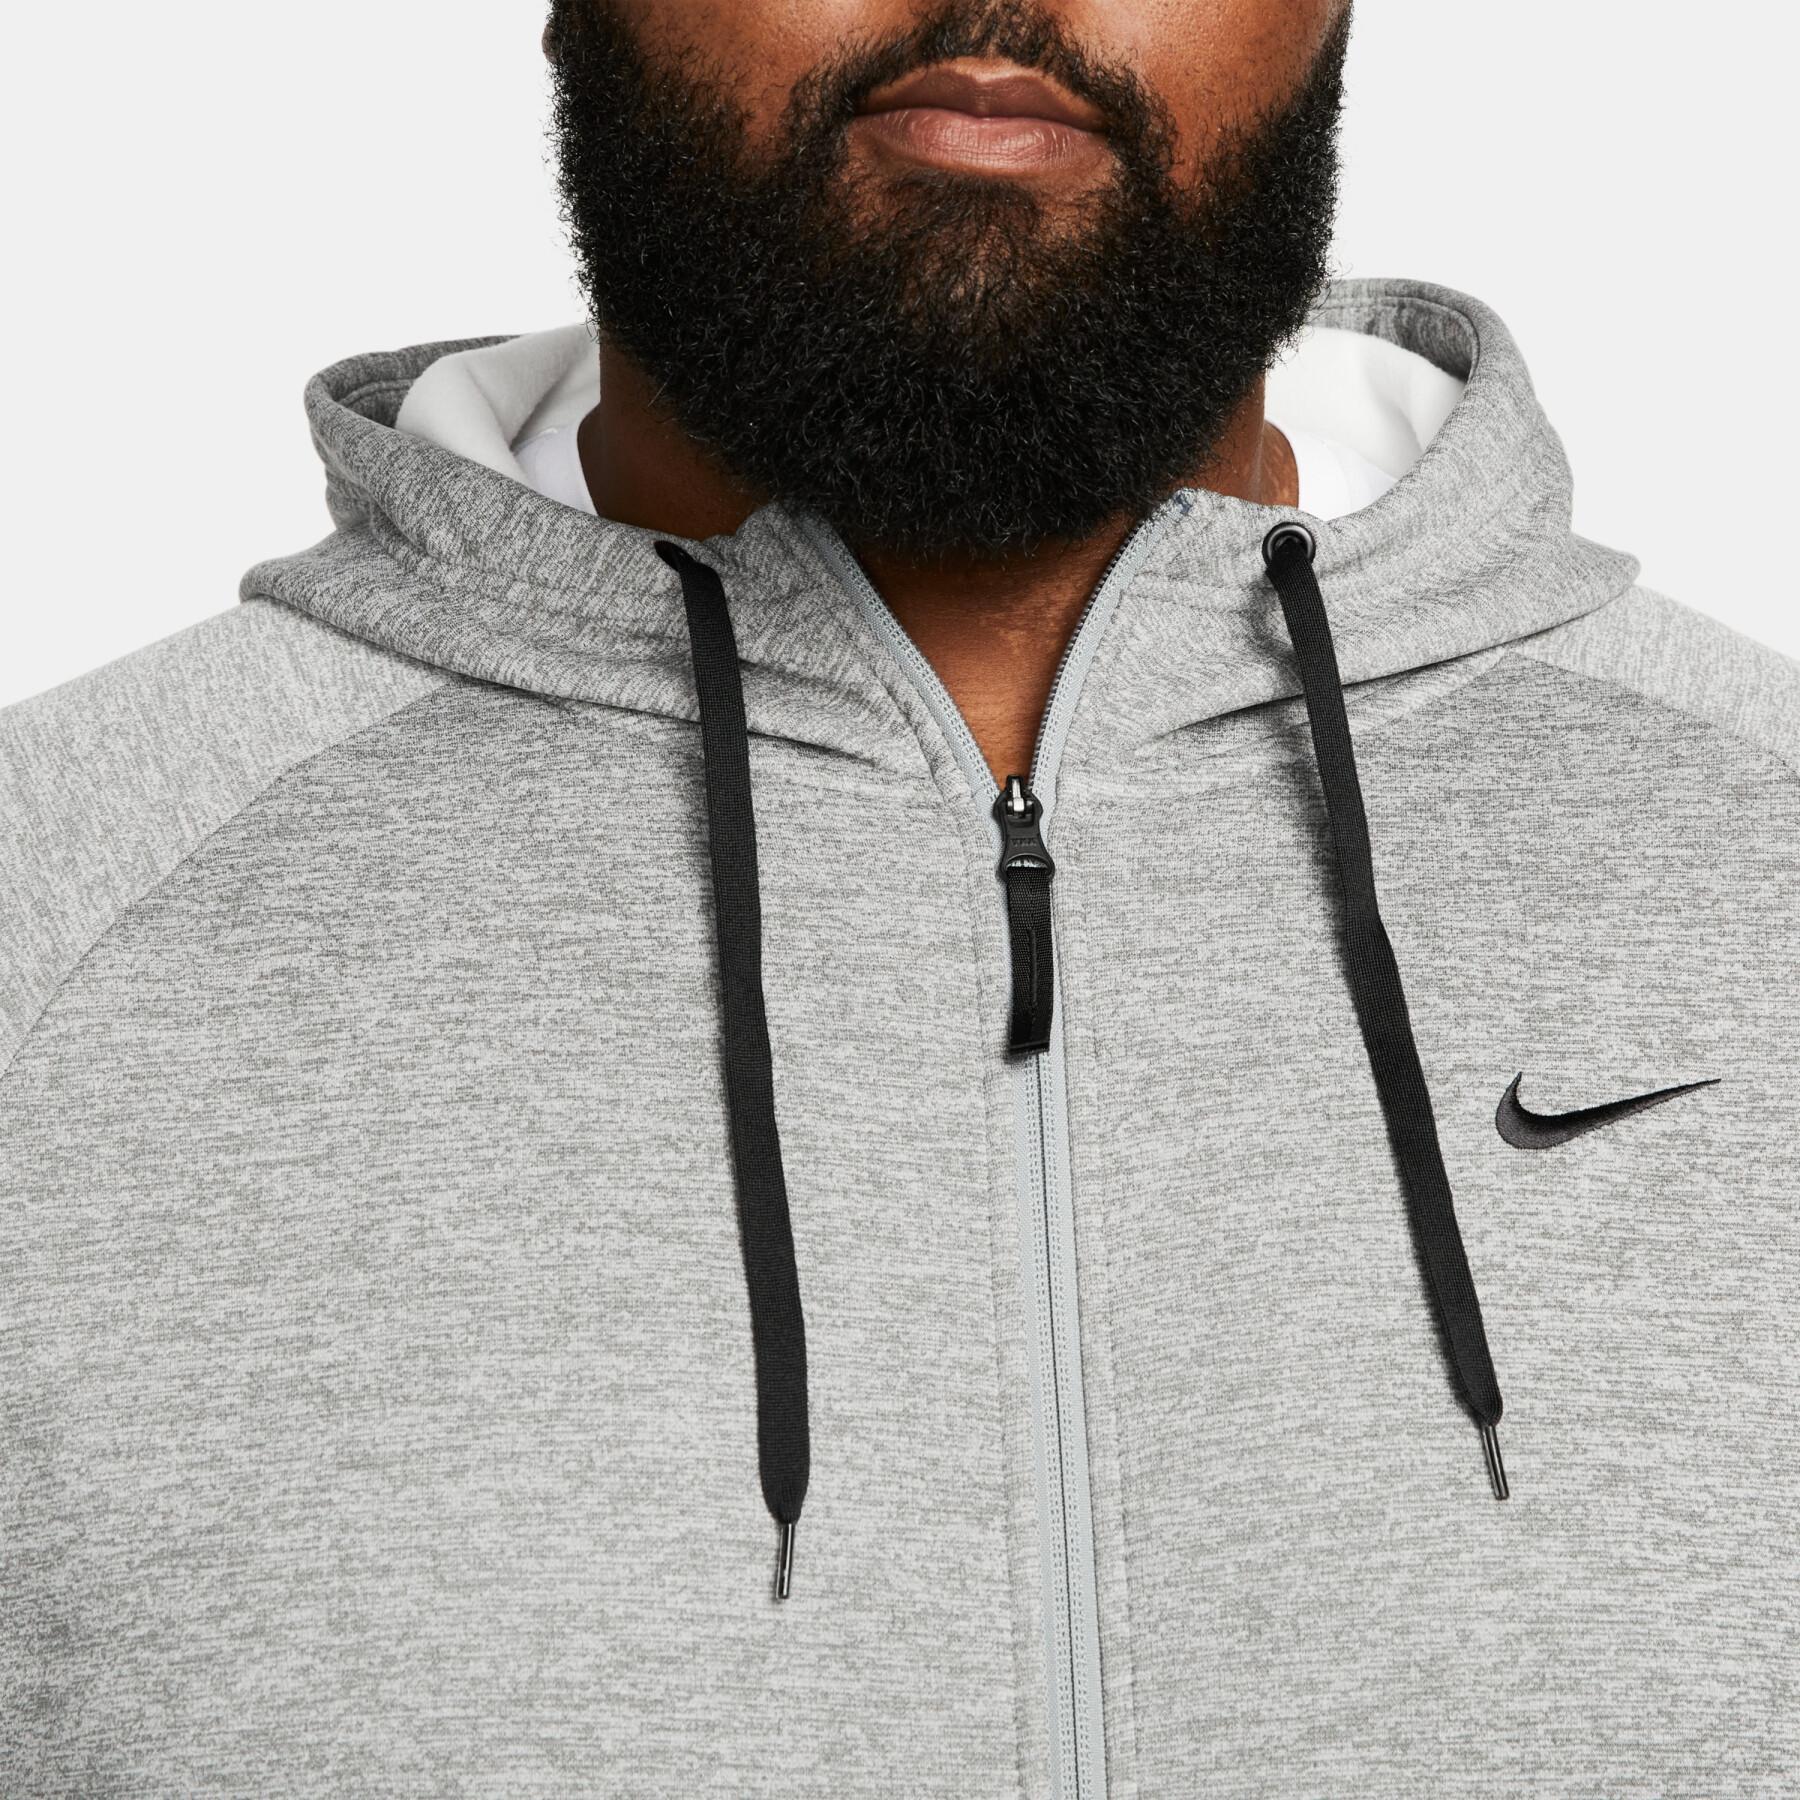 Sweatshirt med huva Nike Therma-FIT